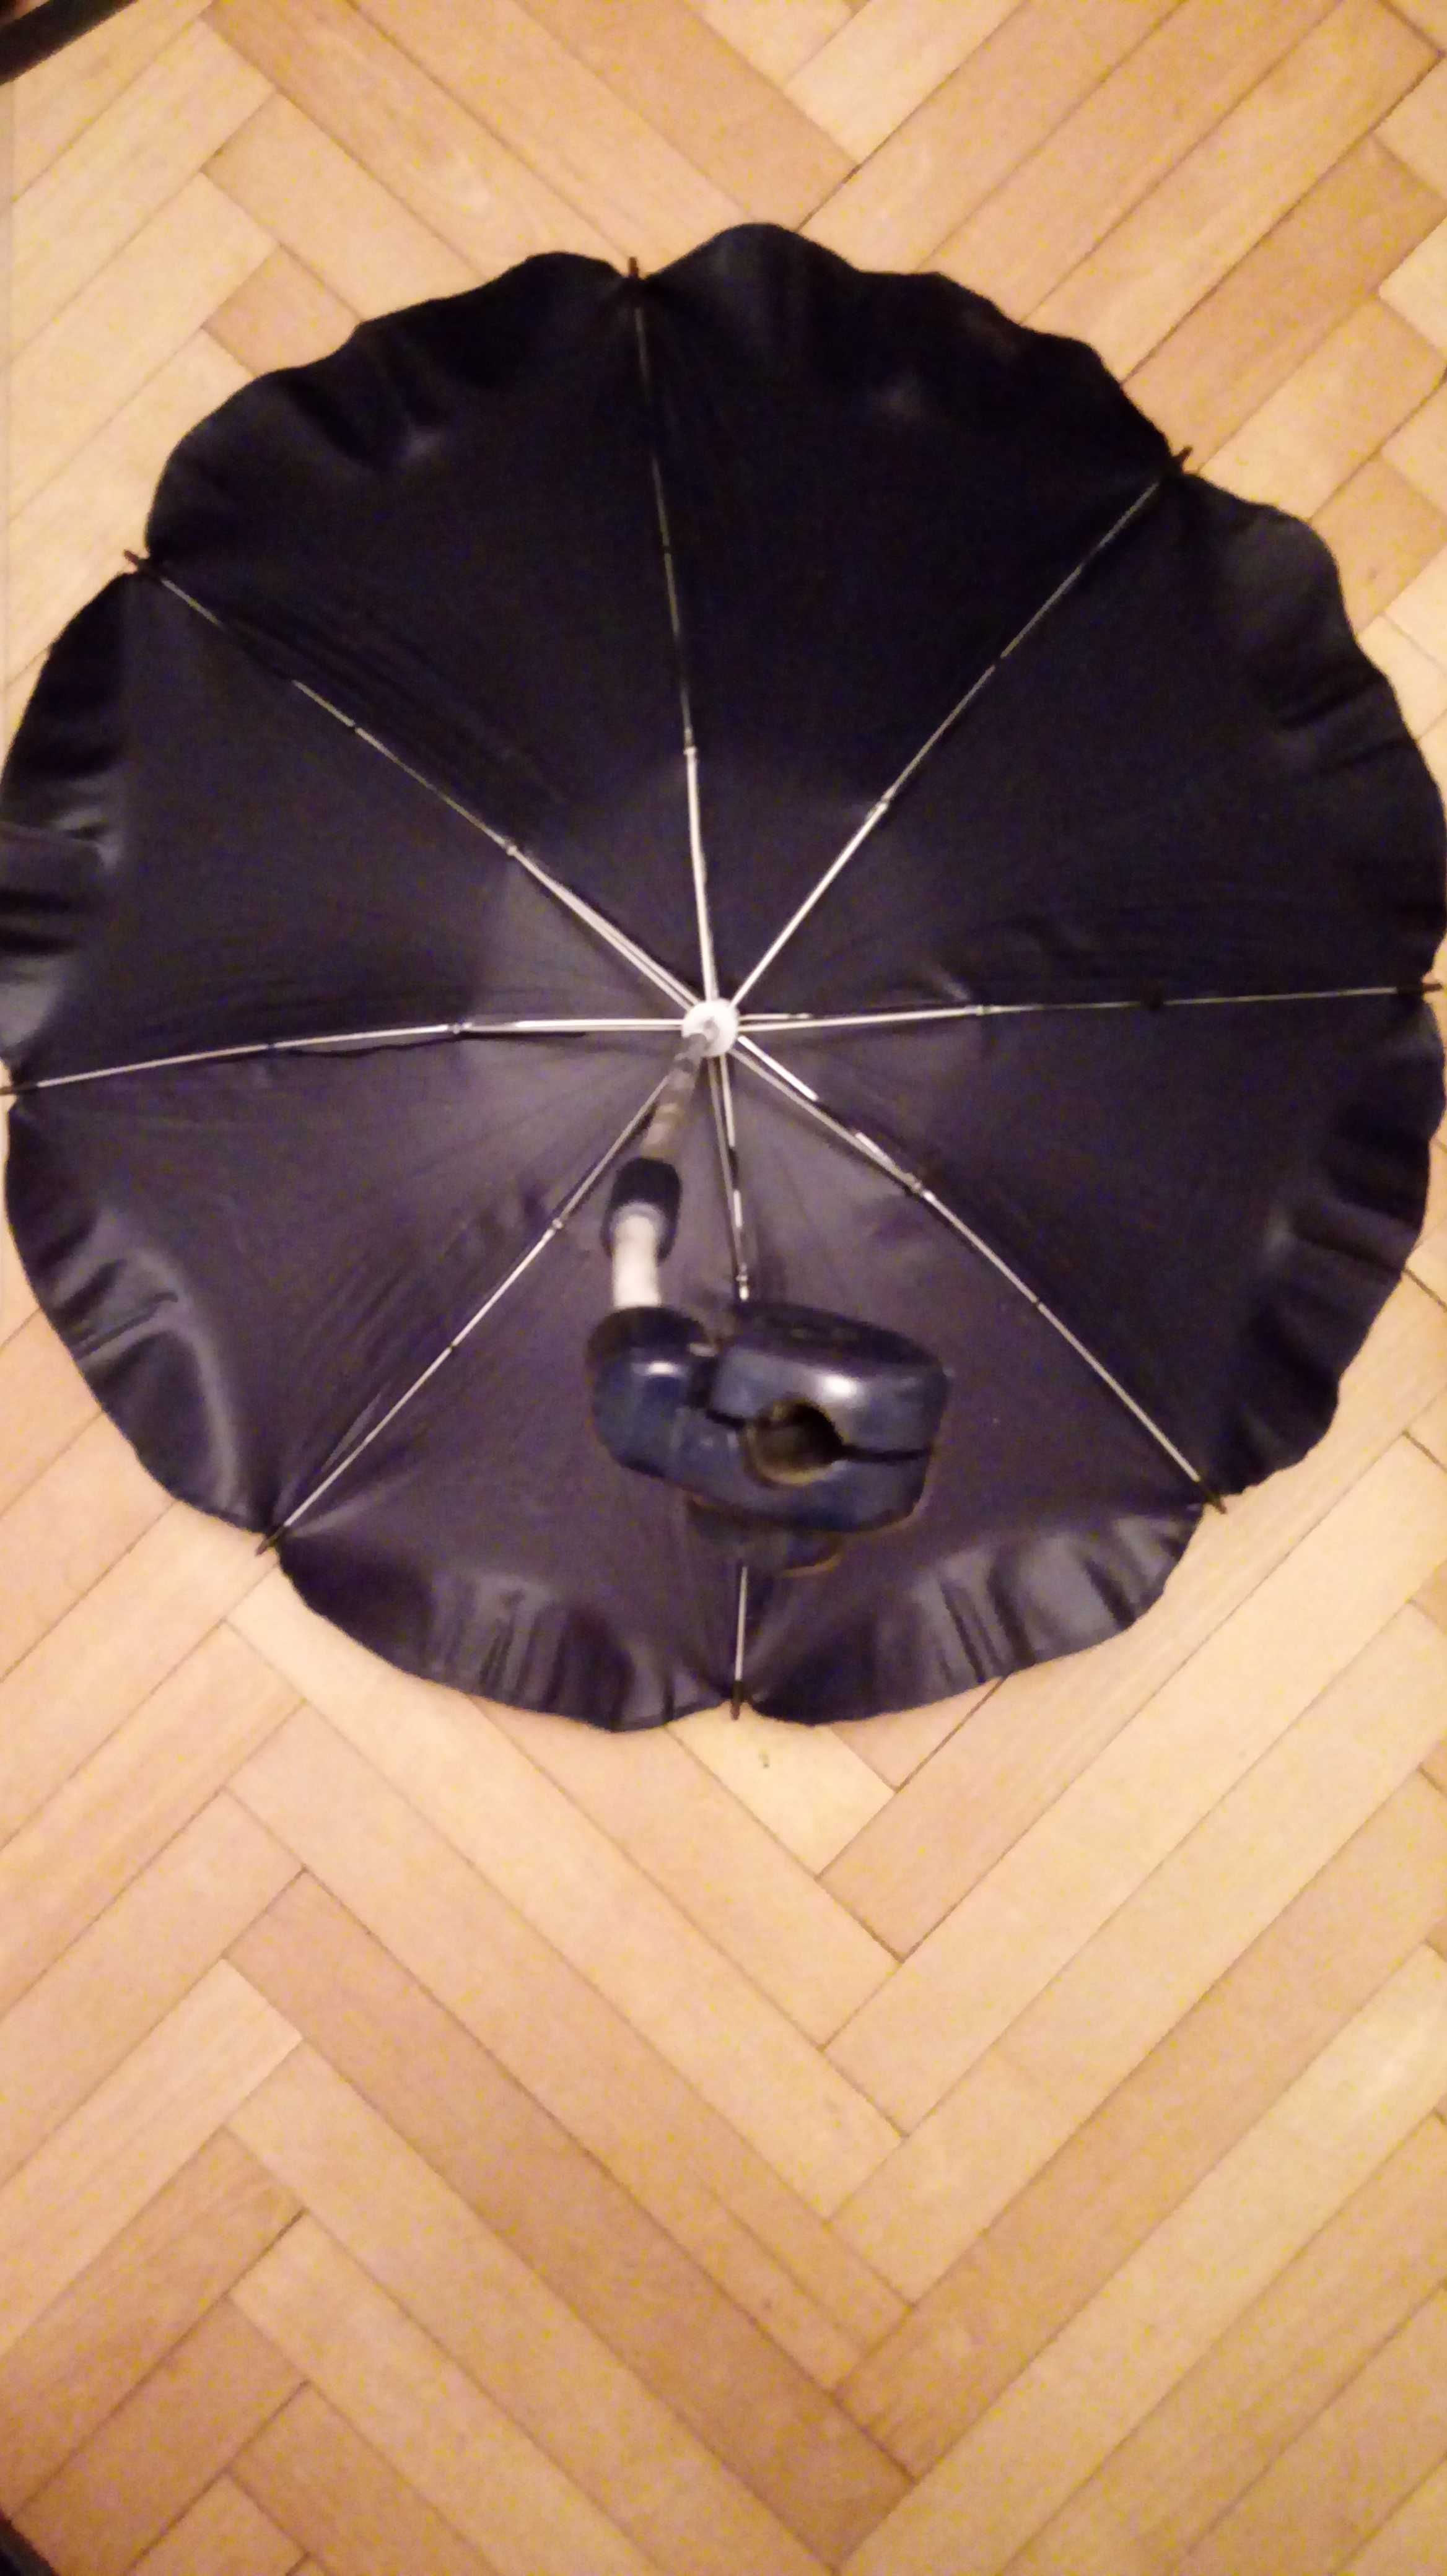 Parasolka do wózka dziecięcego